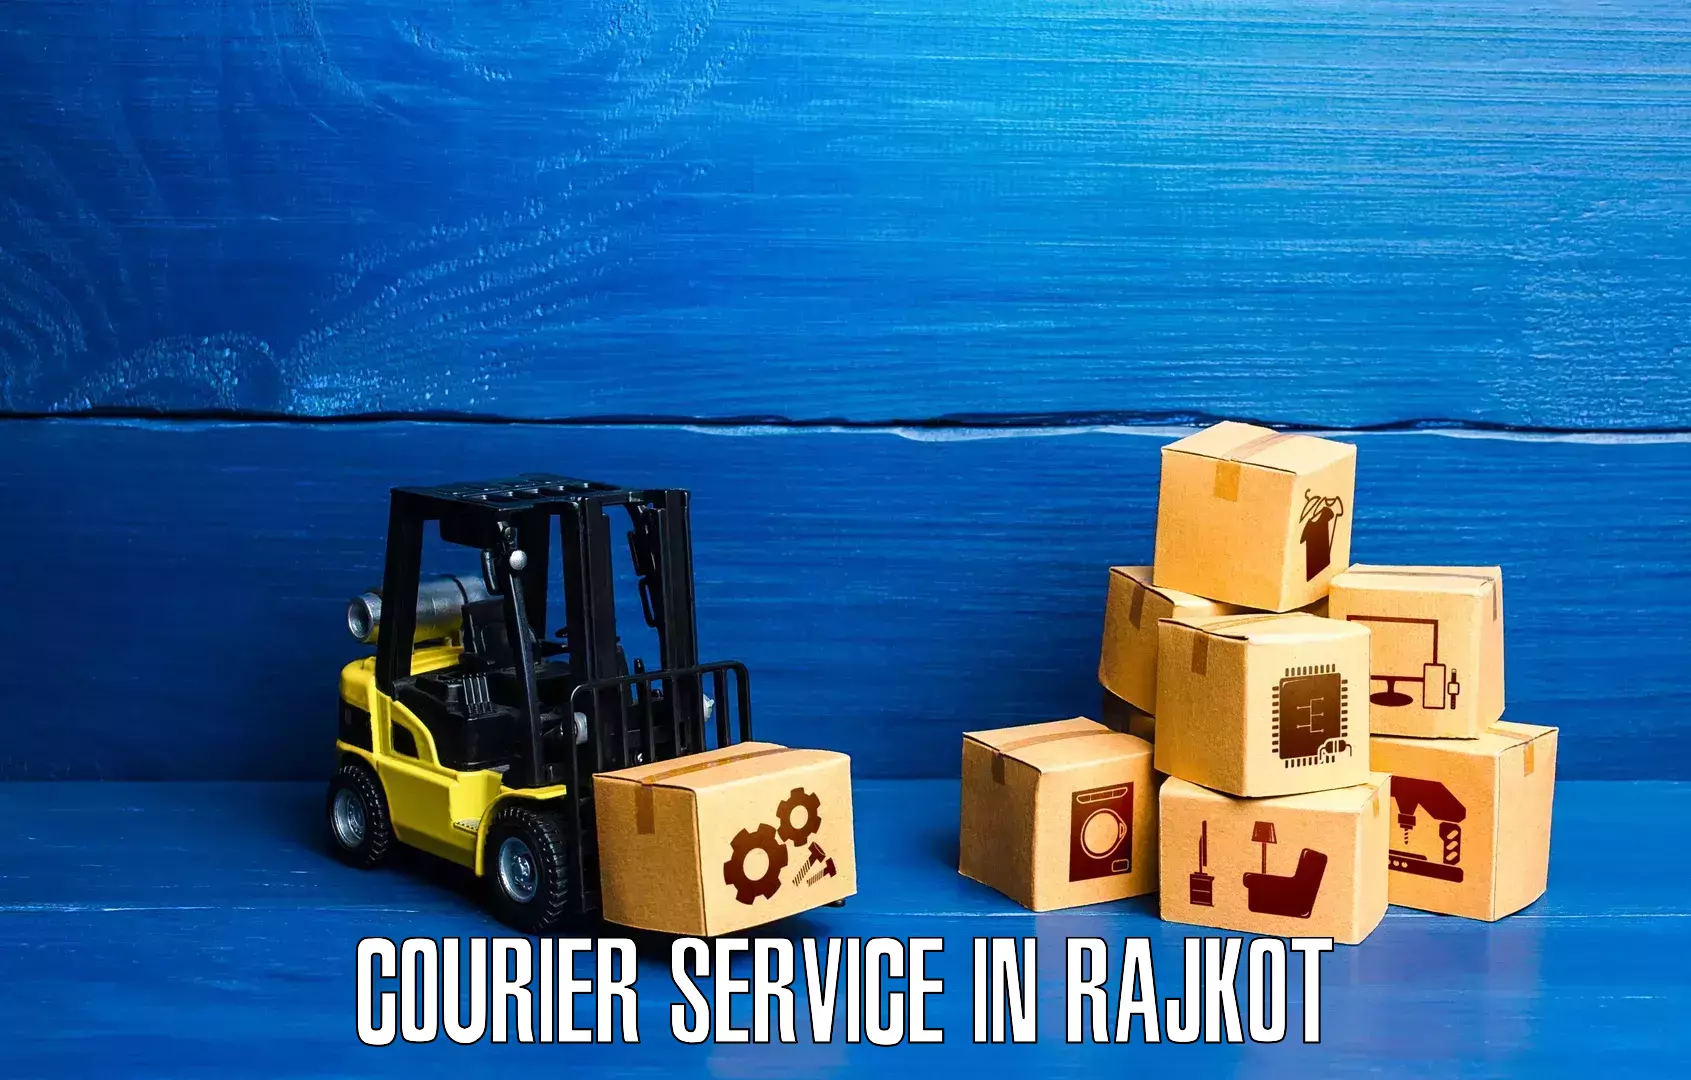 Customer-centric shipping in Rajkot